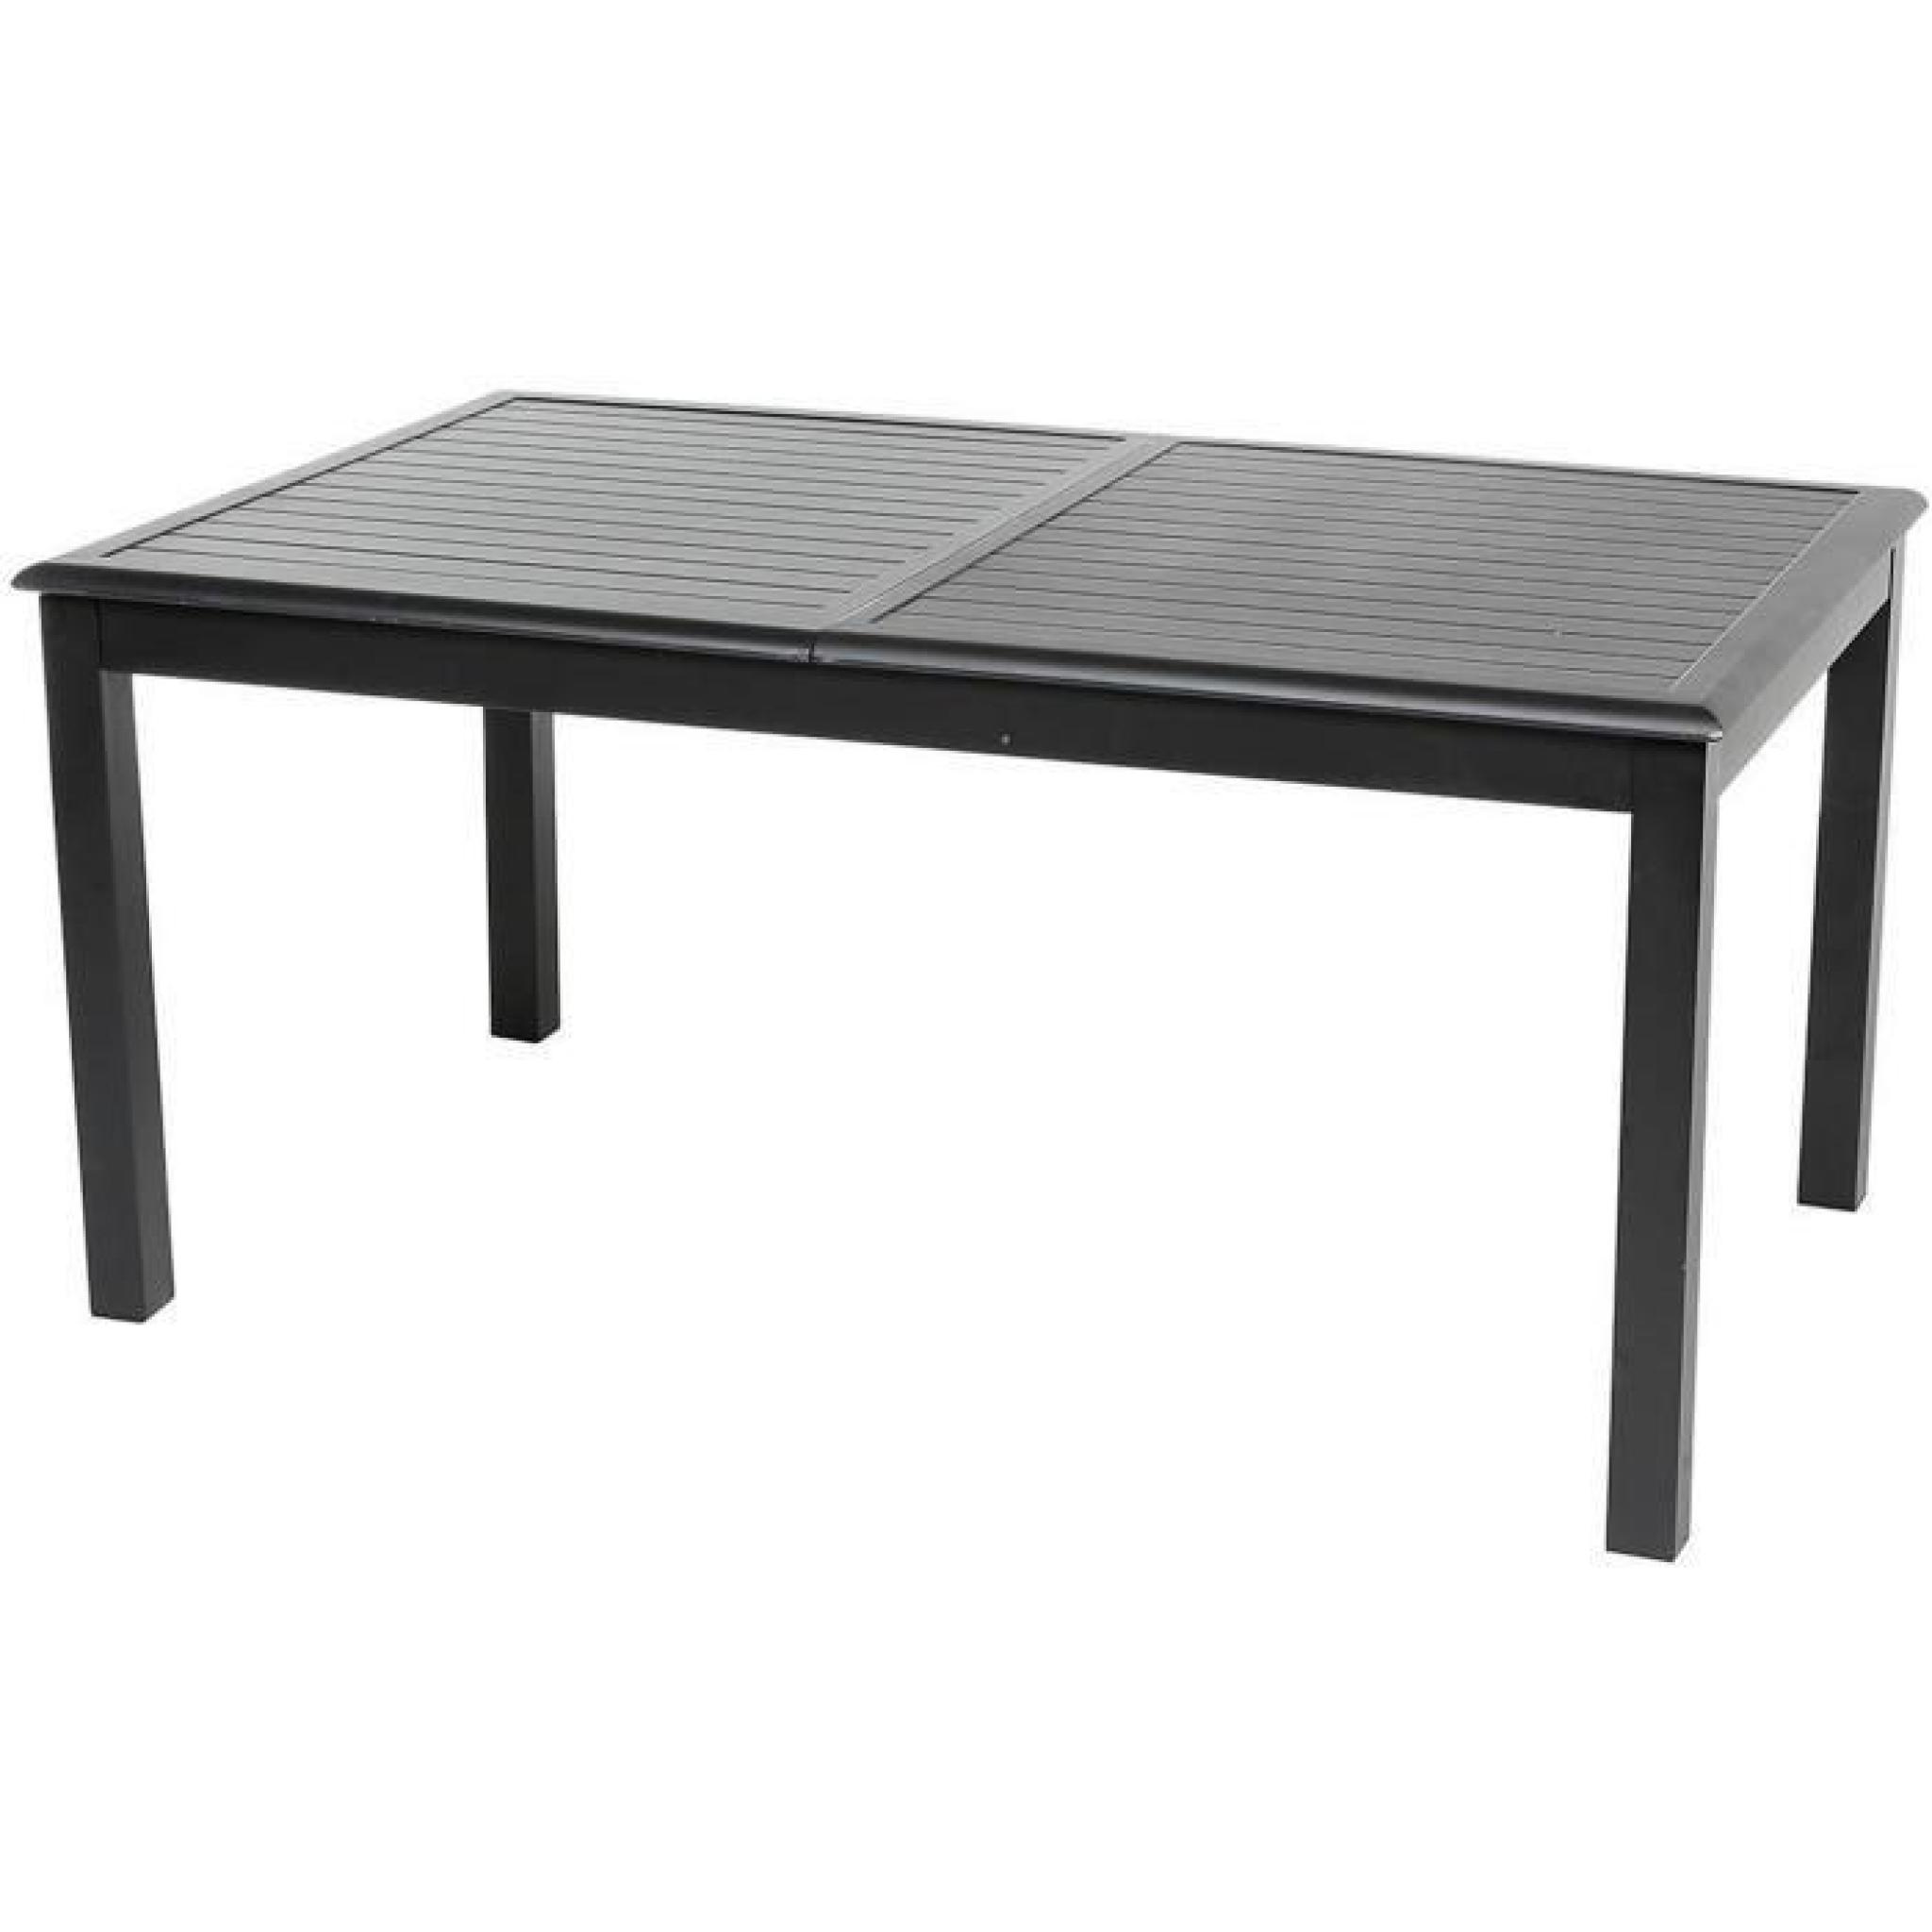 Table extensible en aluminium de couleur noire - Dim : L 160/240 x P 100 x H 75 cm   pas cher